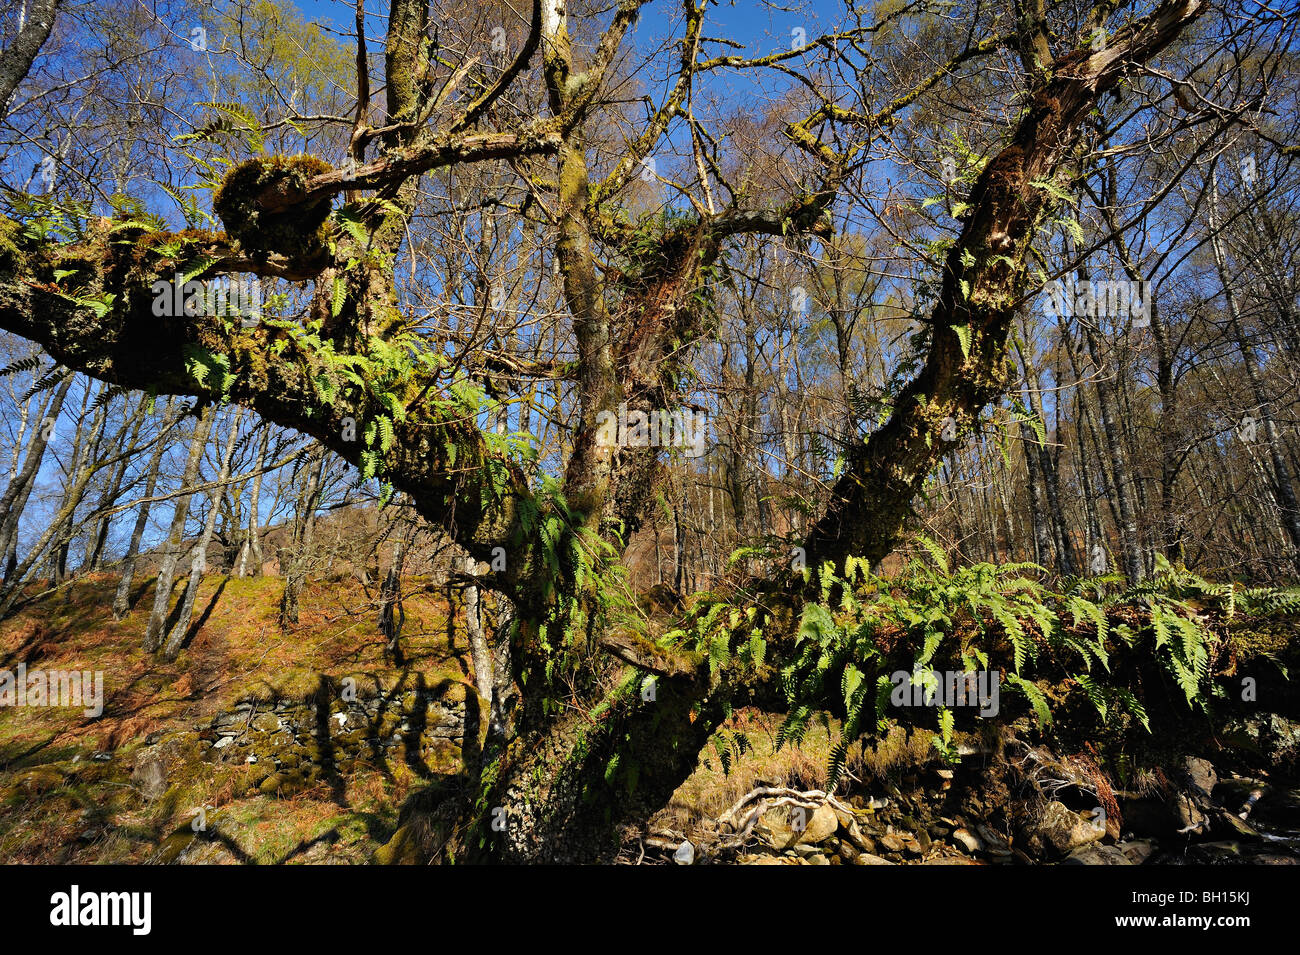 Parasitäre Farne wachsen auf den Ästen eines Baumes tot und verfallen in Wäldern in der Nähe von Killin, Perthshire, Schottland Stockfoto